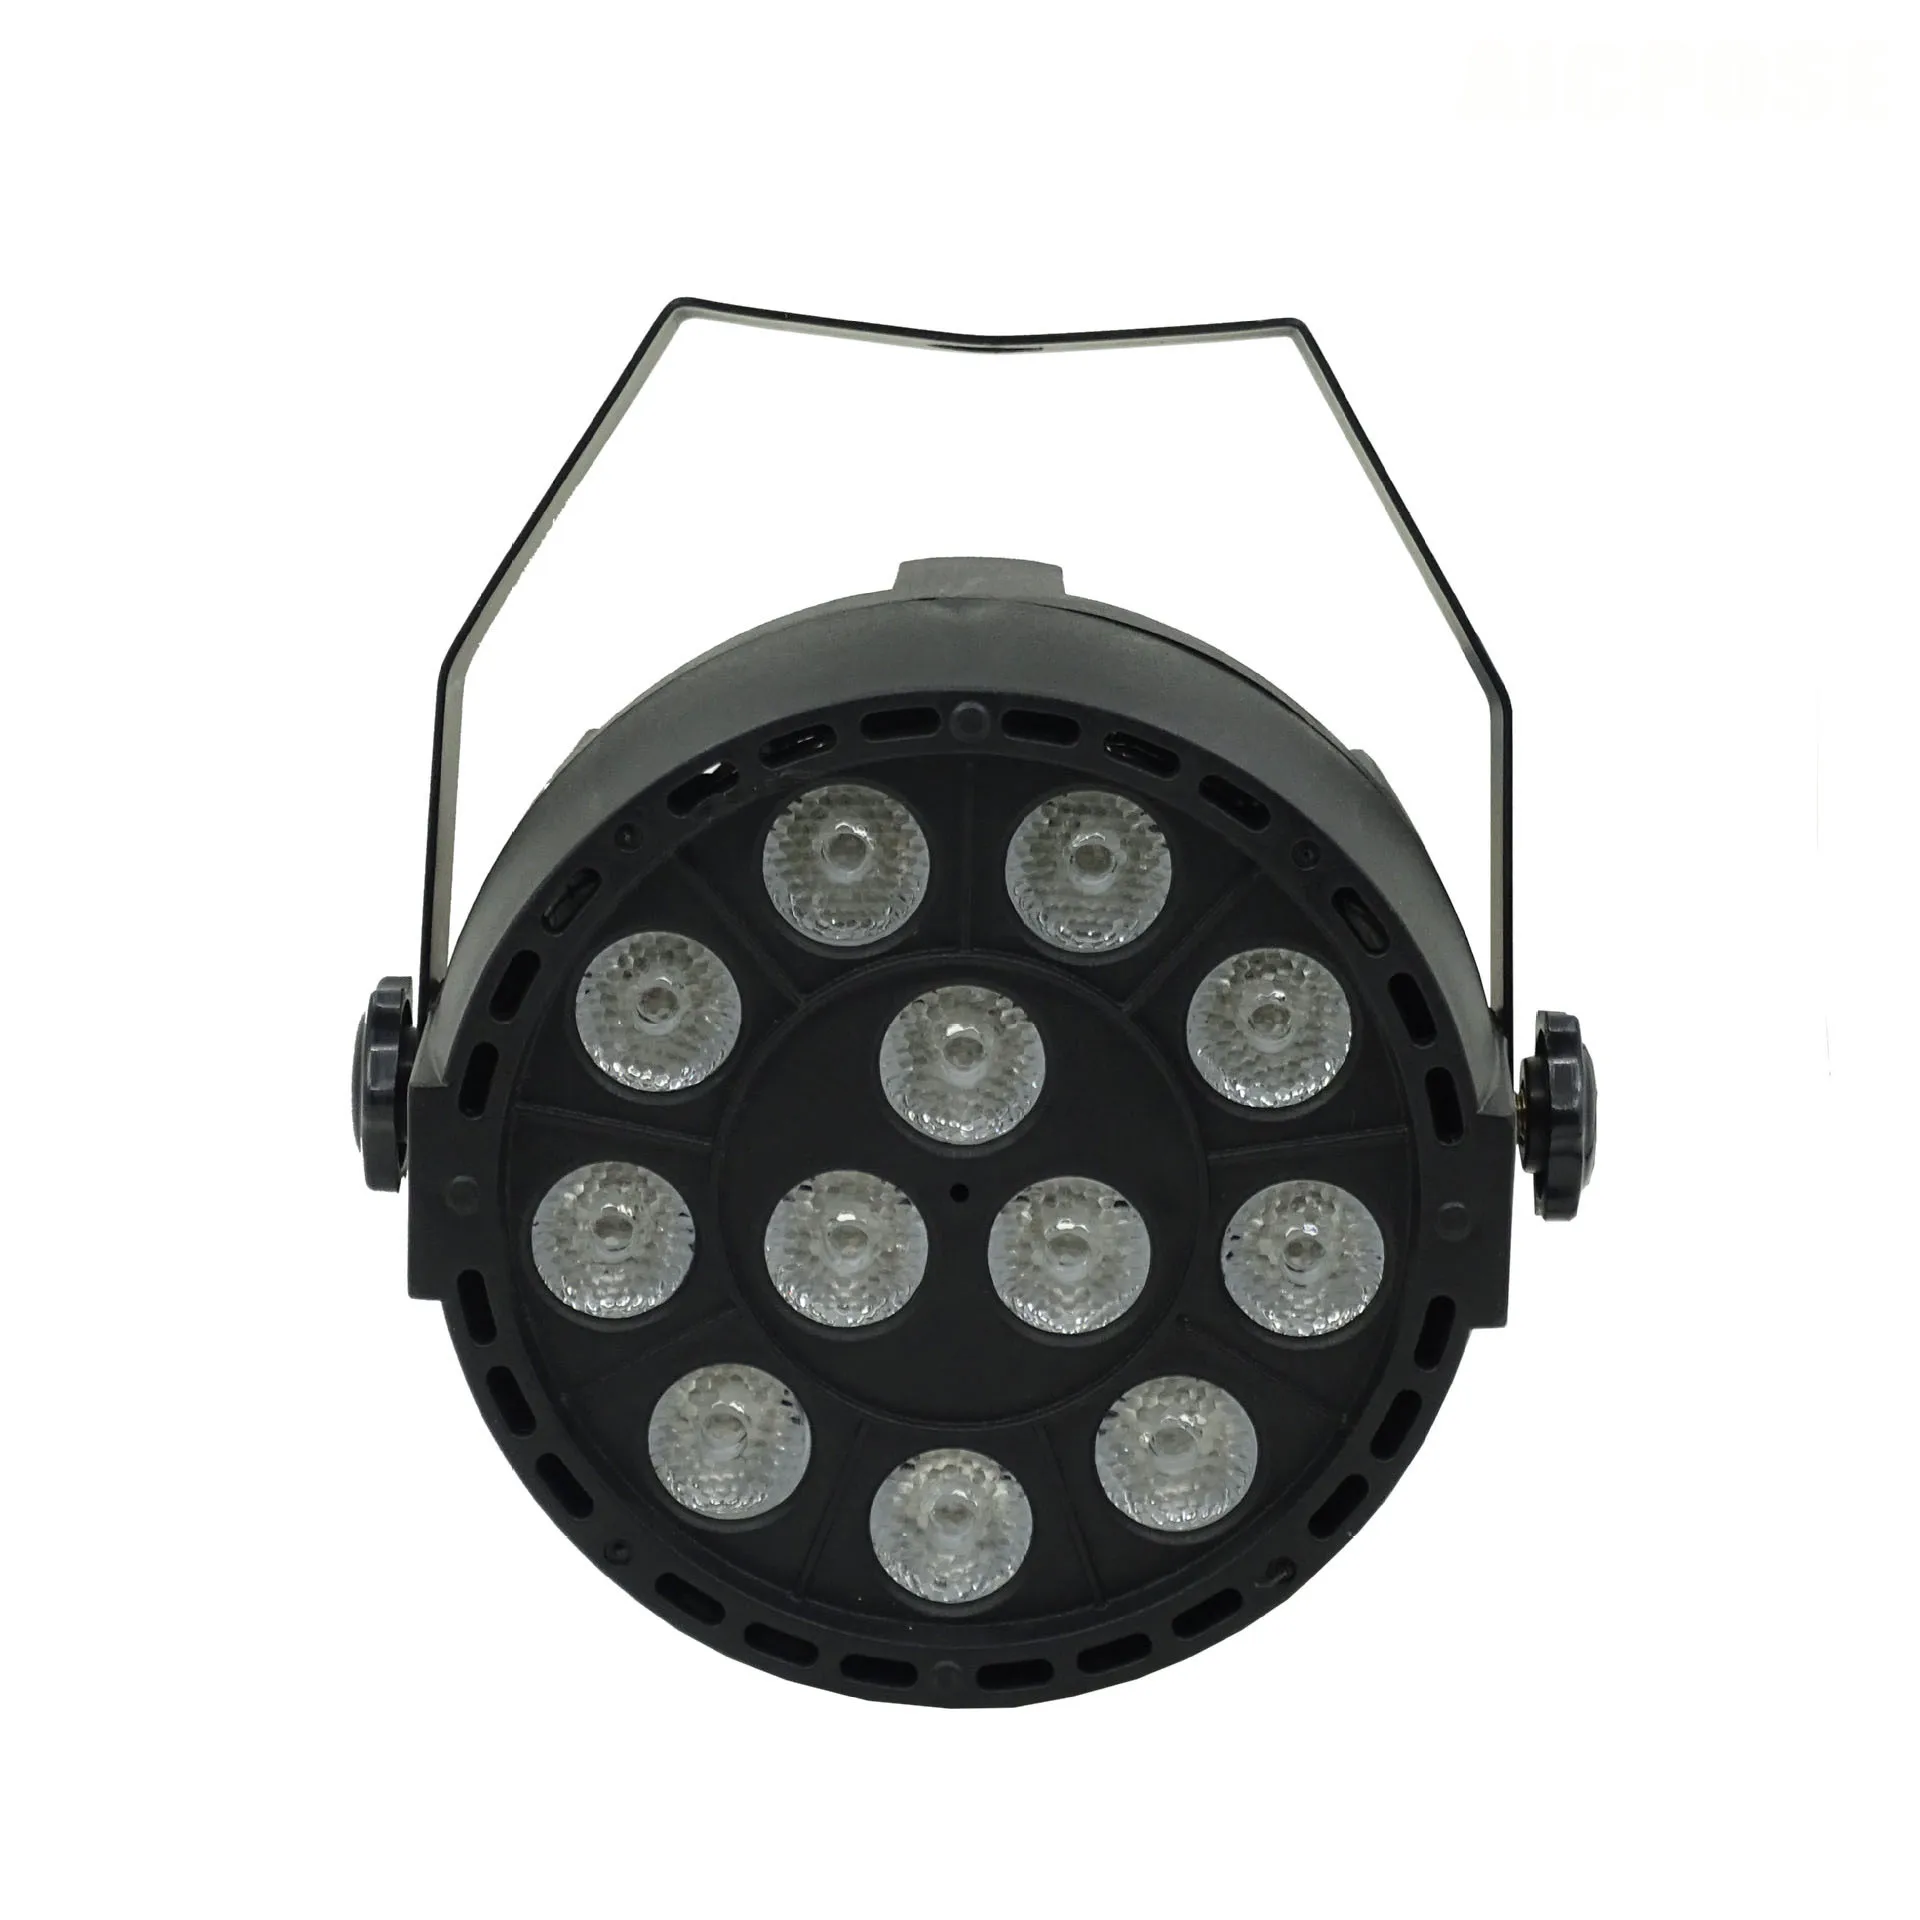 Светодиодный светильник par s 54x3 Вт DJ Par светодиодный 54*3 Вт светильник s R12, G18, B18, W6 светильник для мытья диско DMX контроллер эффект для малого paty KTV